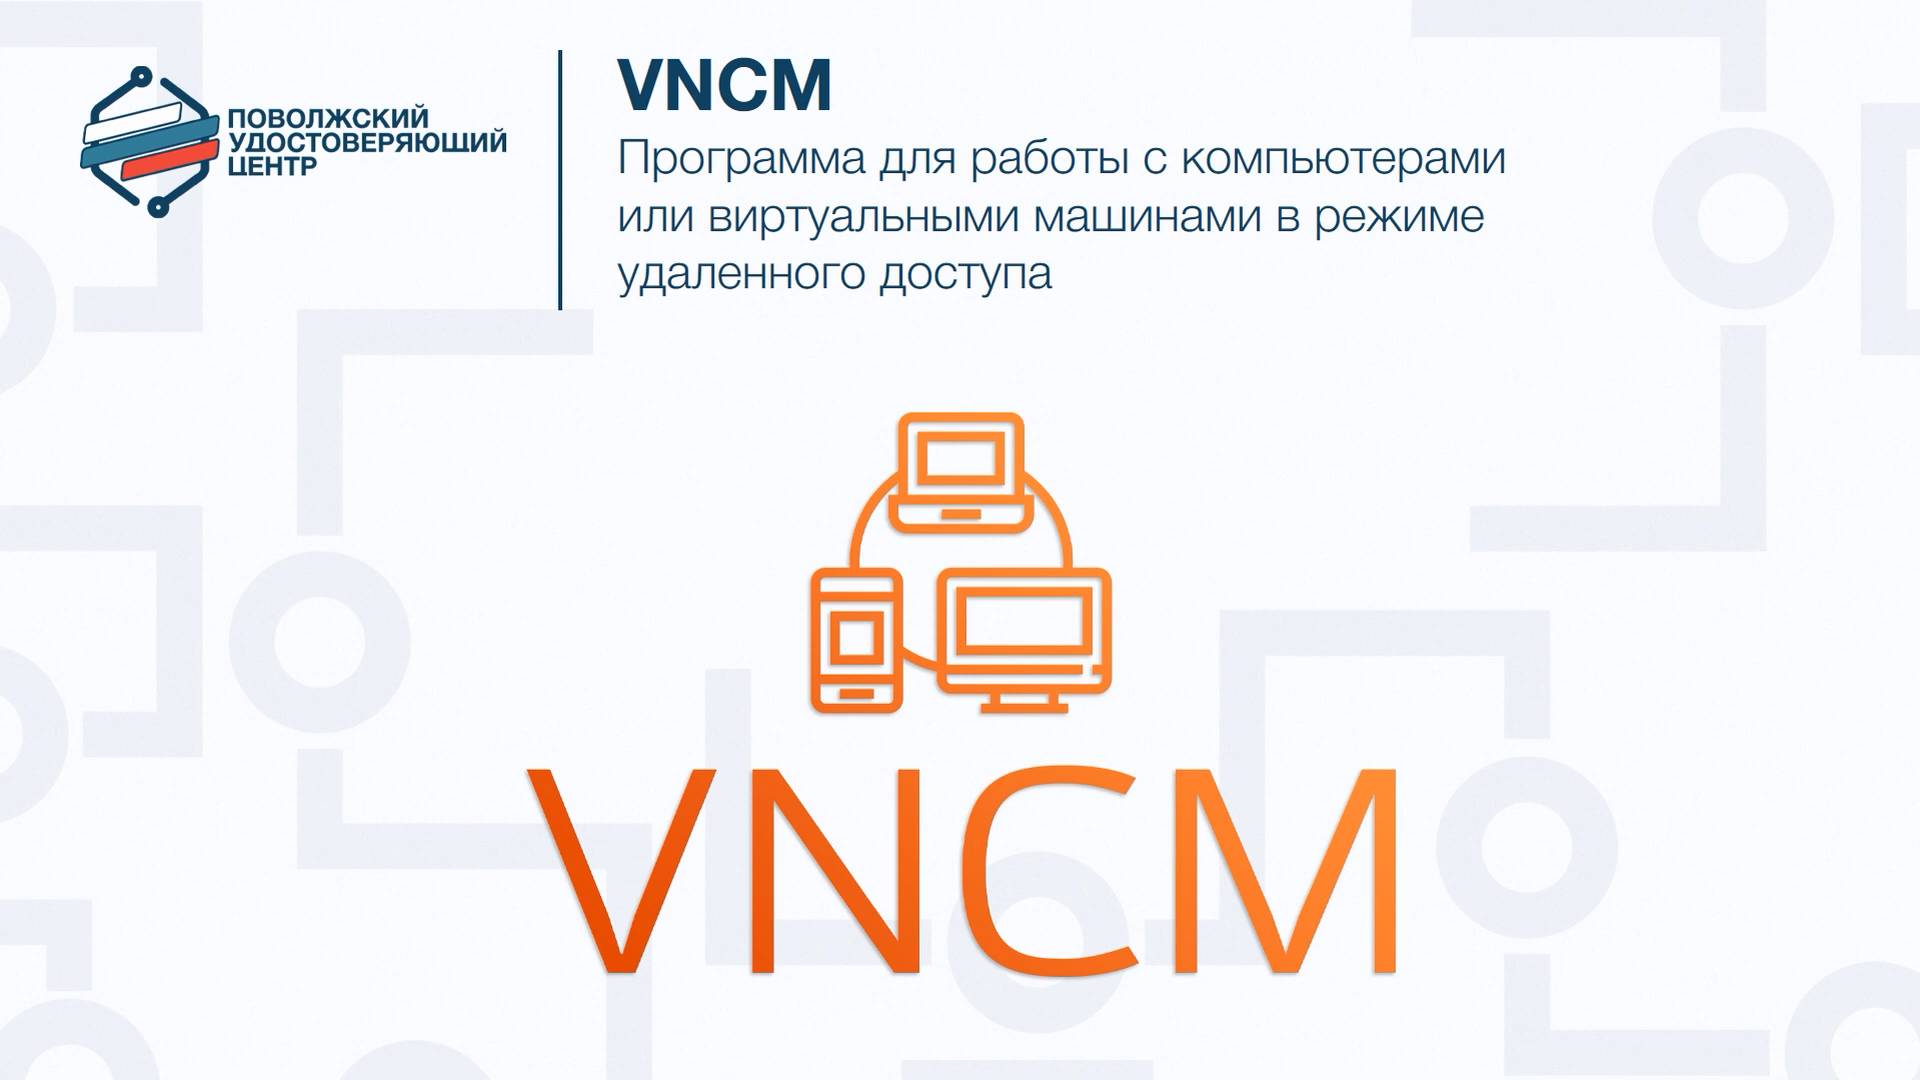 VNCM - программа для работы в режиме удаленного доступа